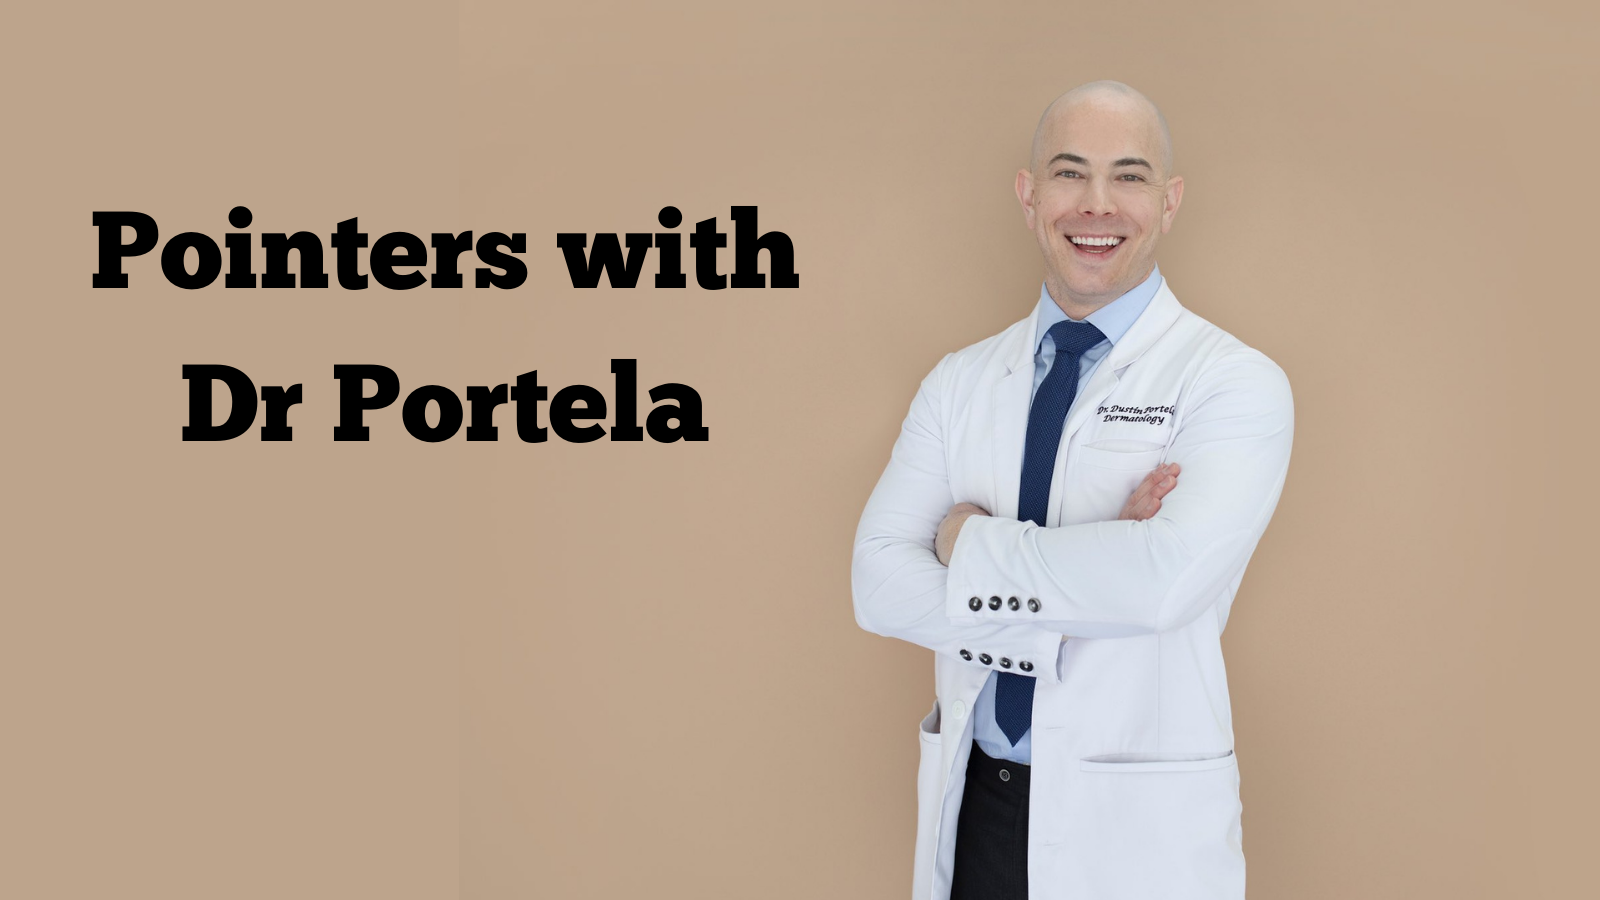 Pointers With Portela: Interviewing Craig Kraffert, MD 